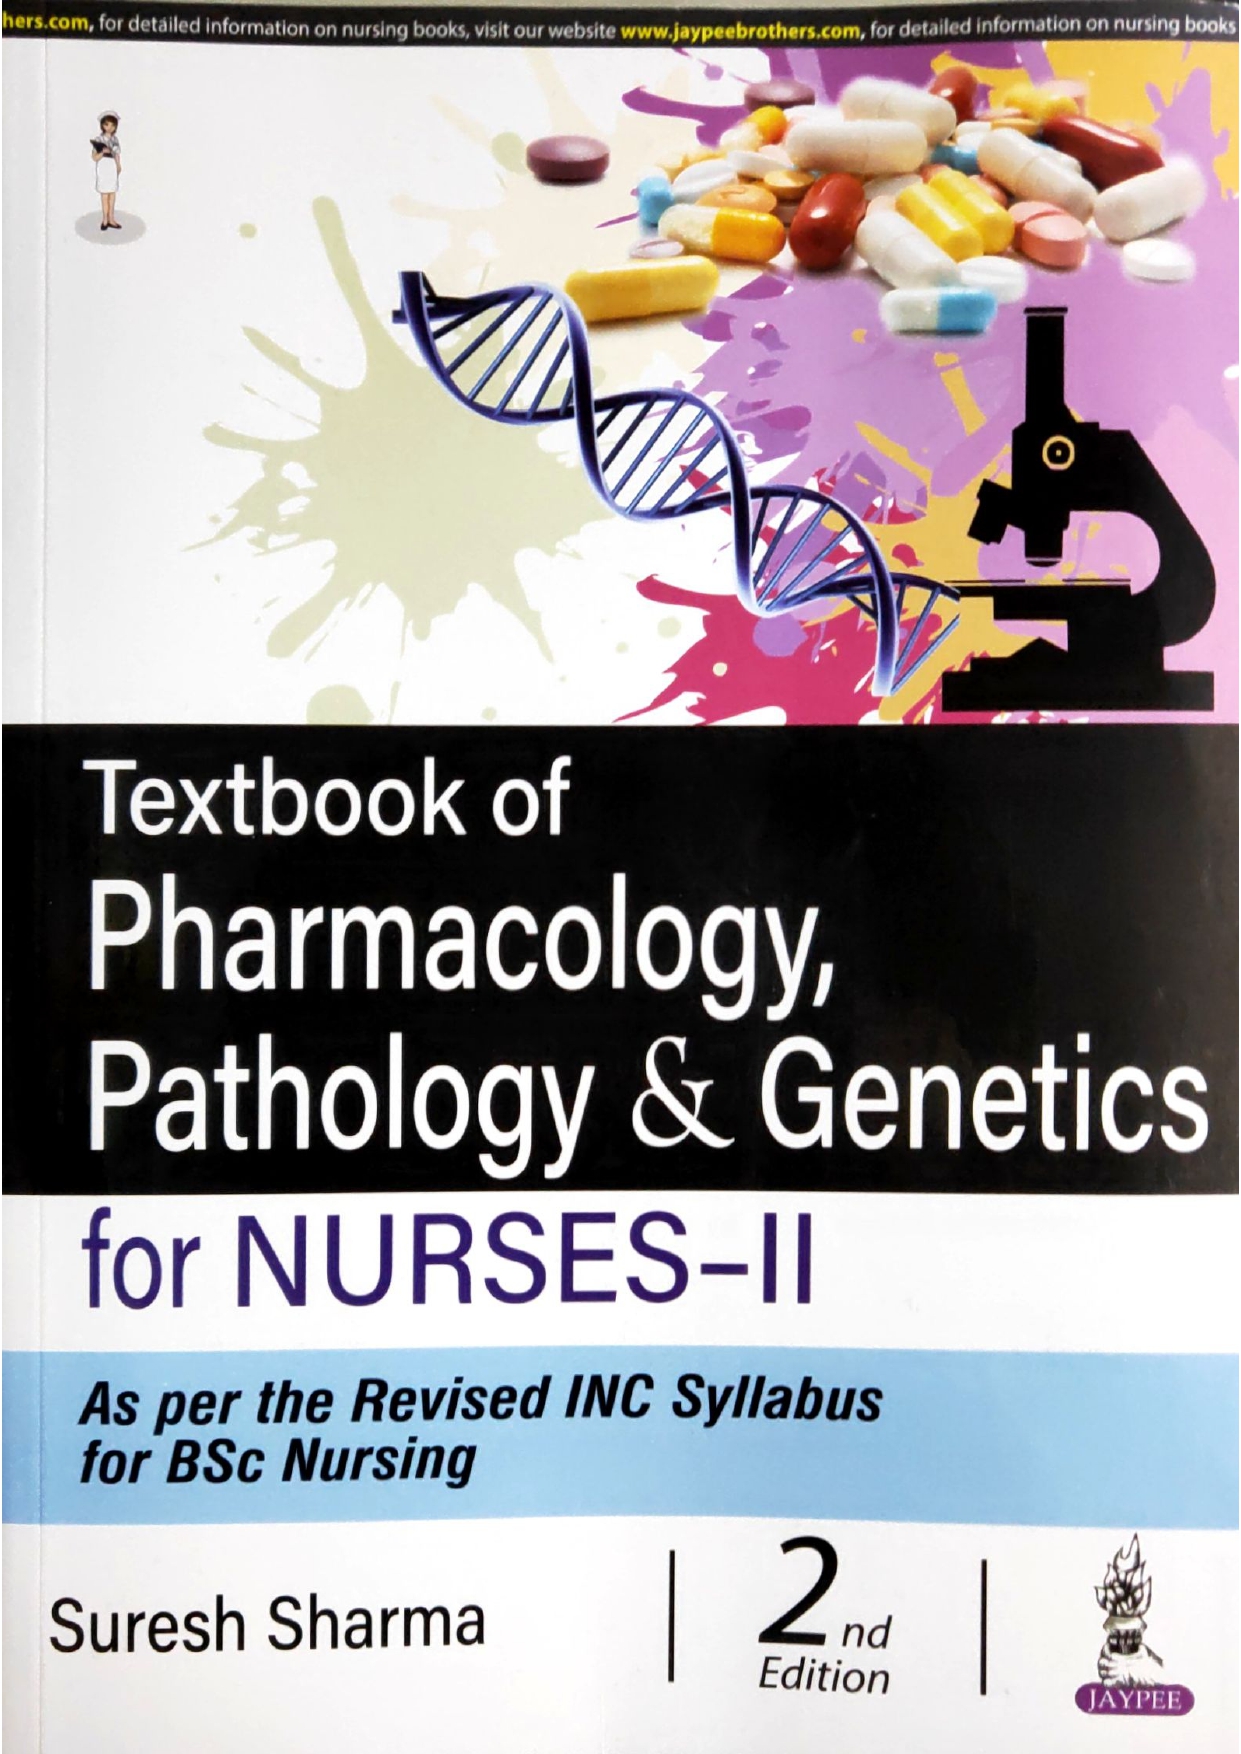 TEXTBOOK OF PHARMACOLOGY, PATHOLOGY & GENETICS FOR NURSES-II